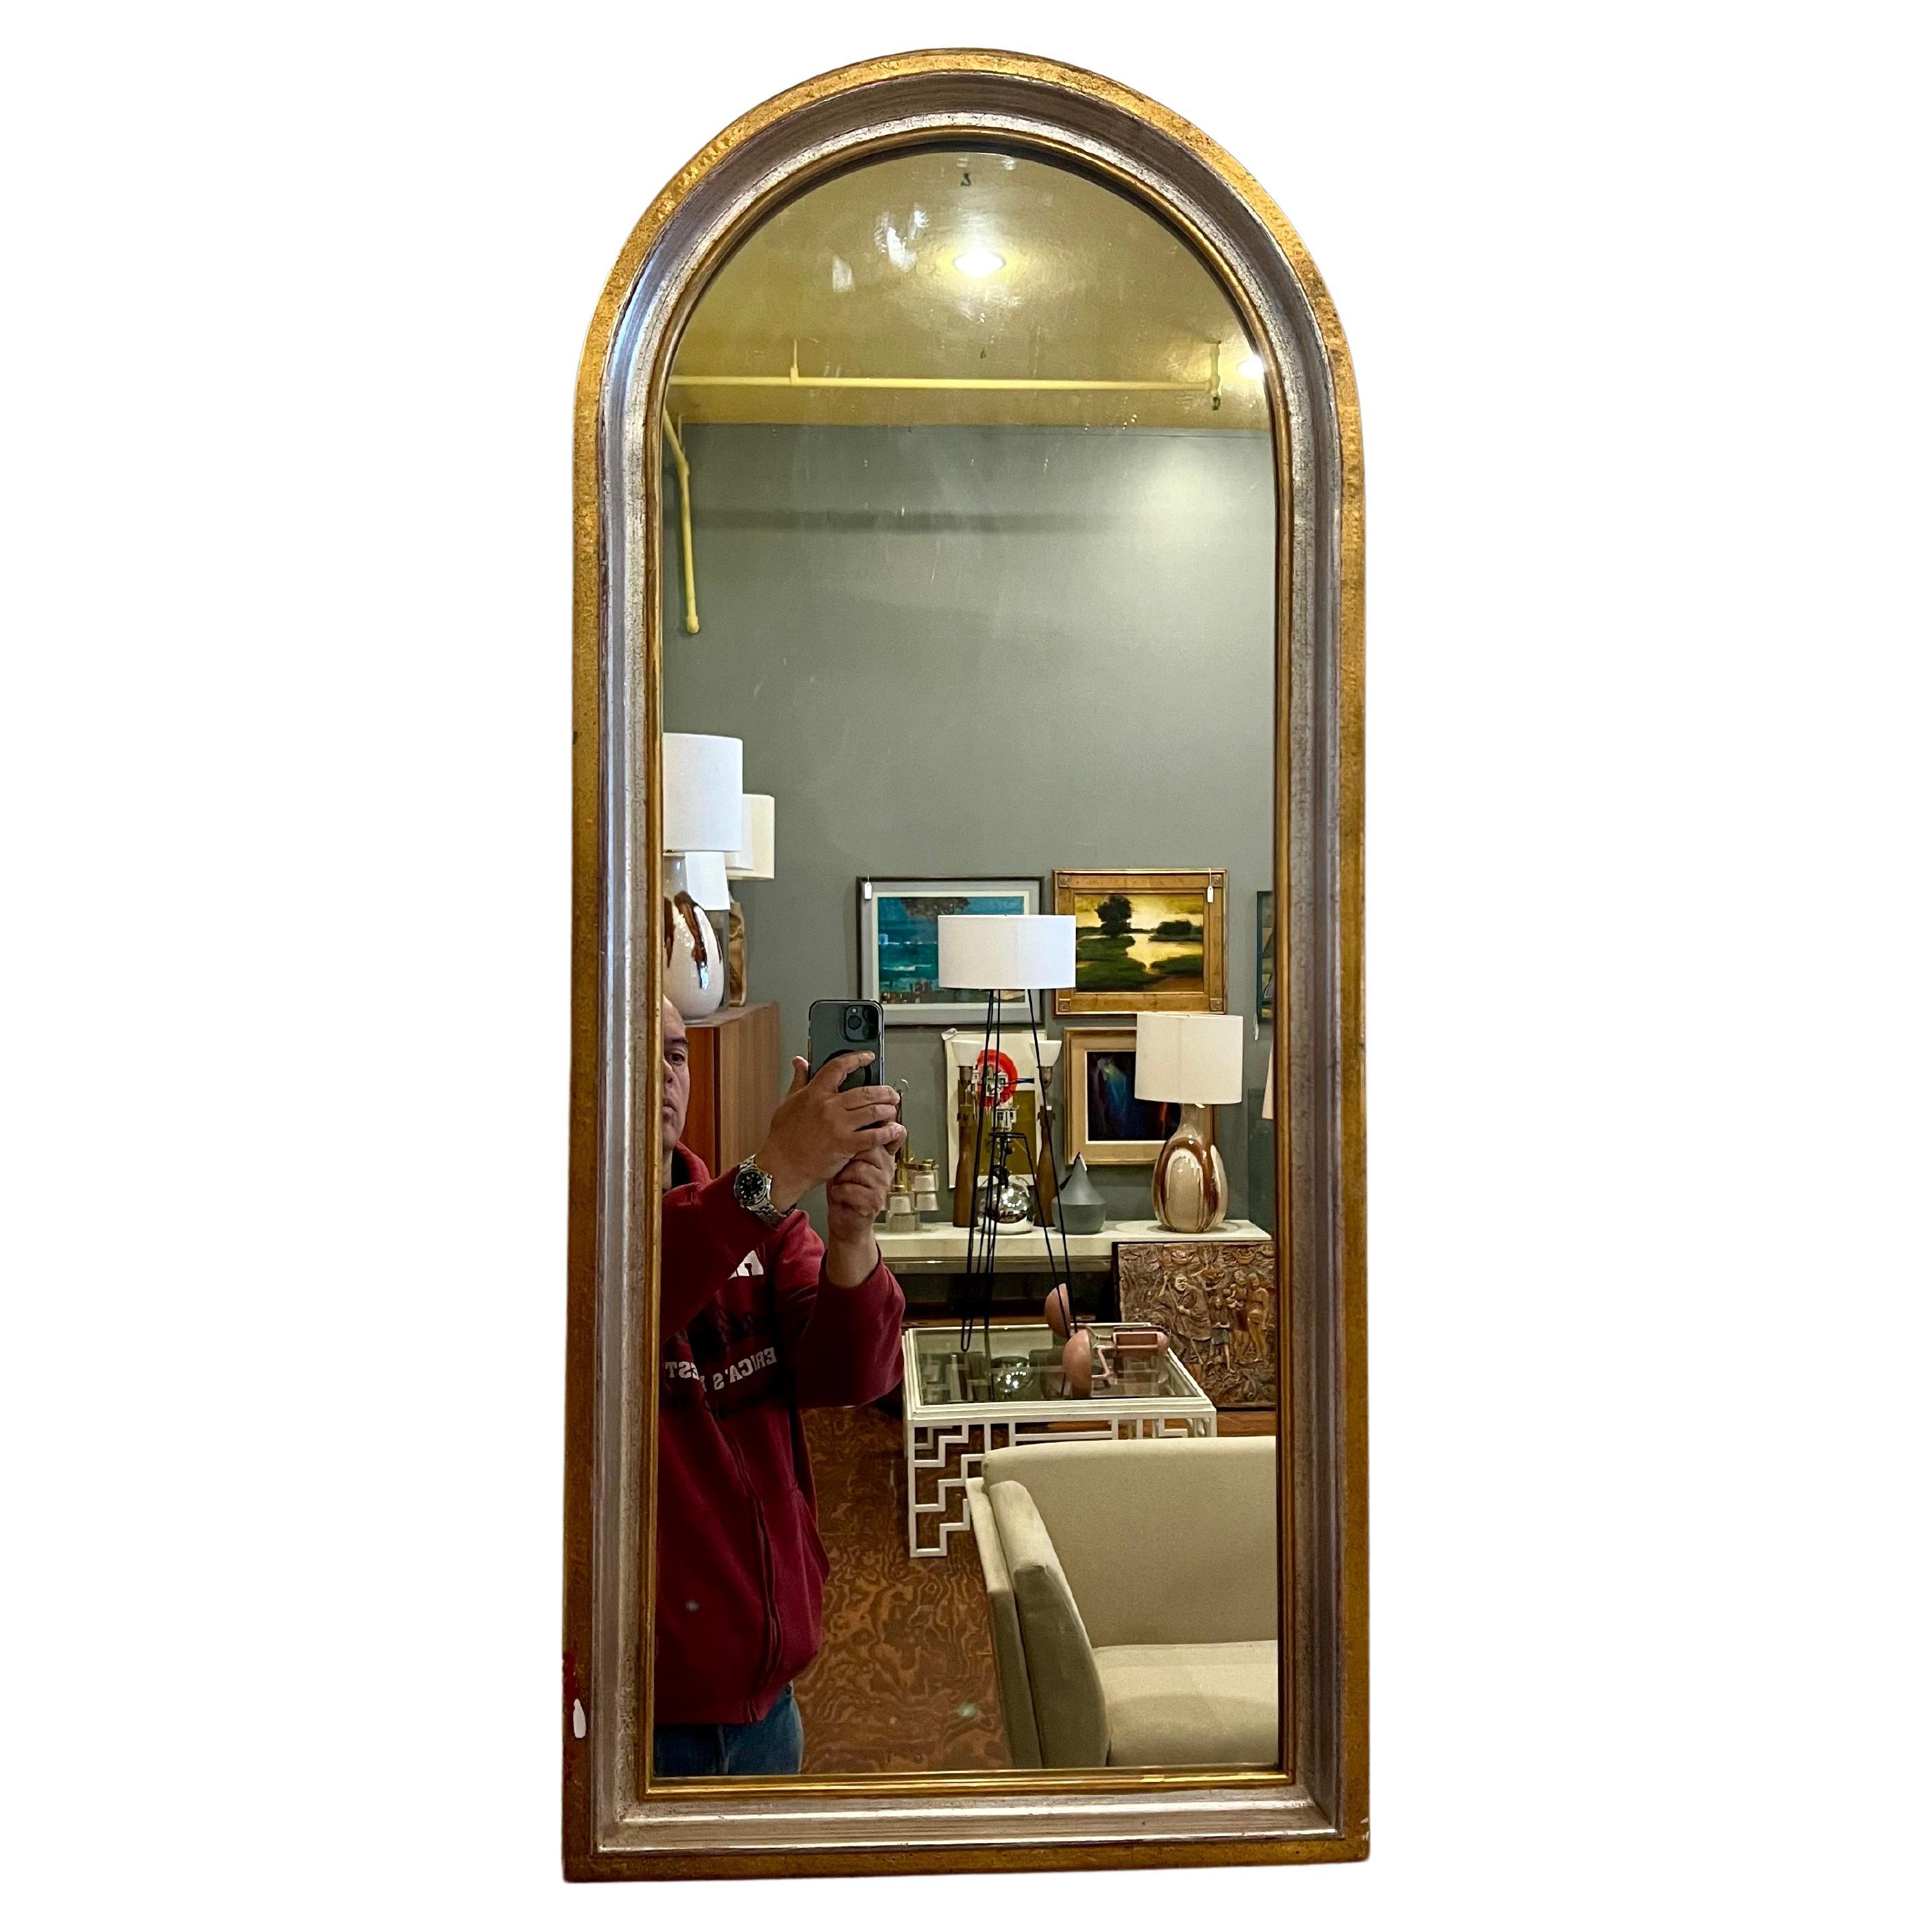 Italienische Vintage vergoldet in Silber und Blattgold gewölbten Spiegel, ca. 1960's, ein paar Flecken, wie gezeigt verkauft, wie / ist leicht zu berühren, insgesamt sehr schöner Zustand.